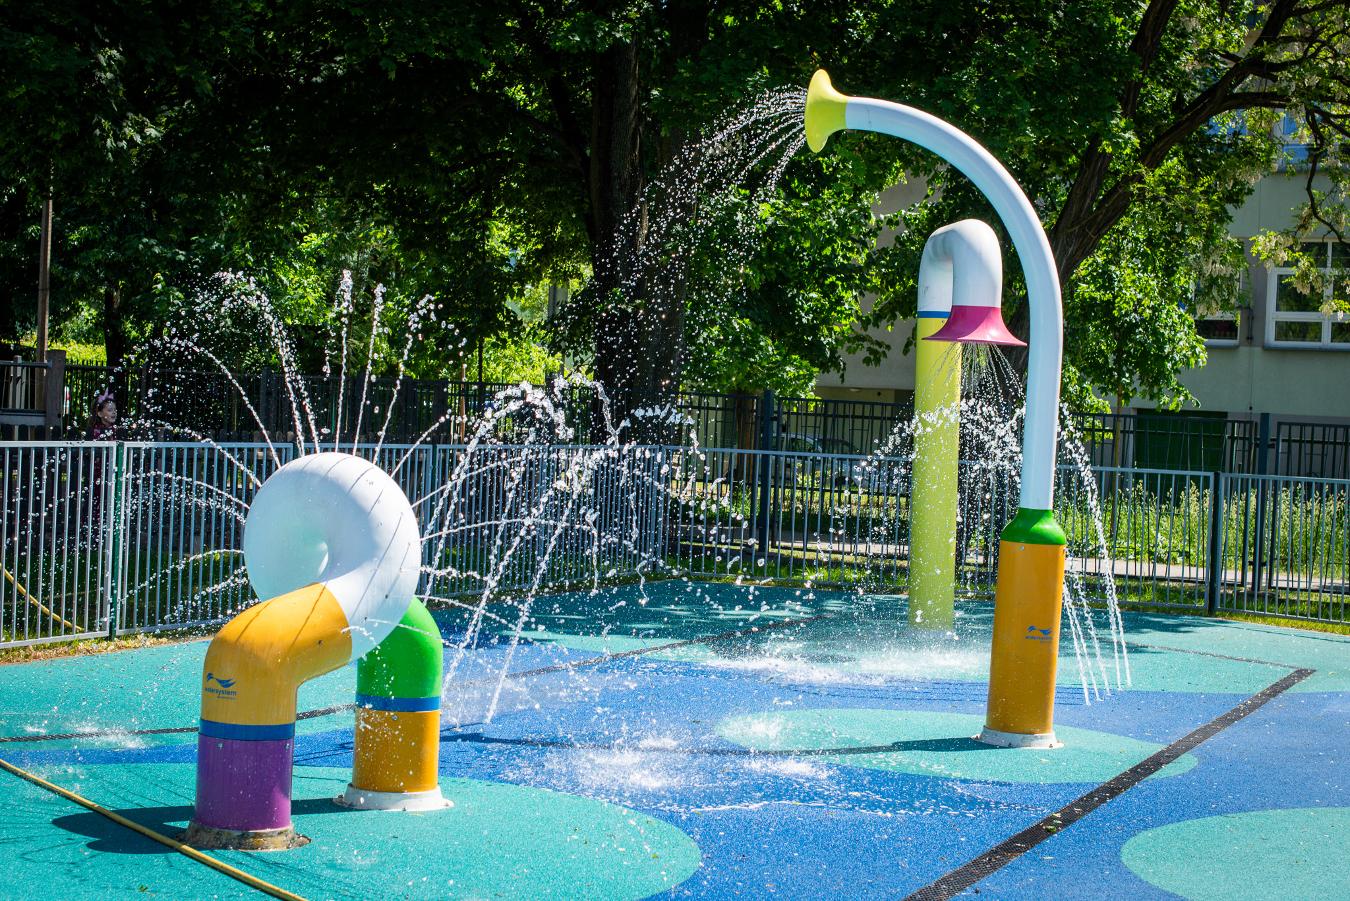 Почти аквапарк: в Варшаве для детей открылась бесплатная водная площадка с множеством аттракционов